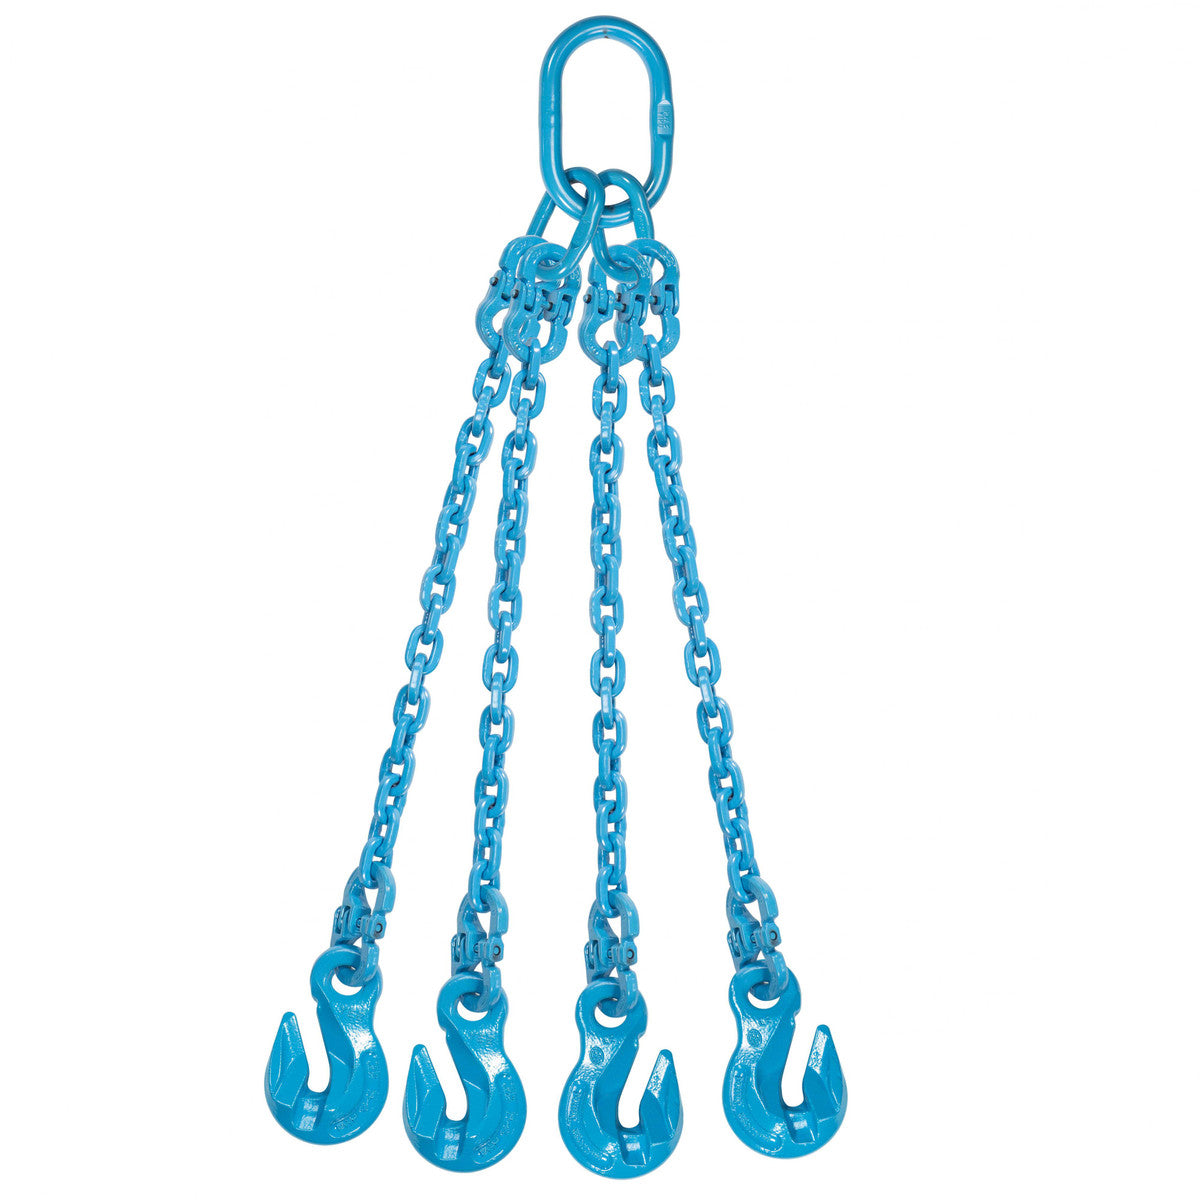 9/32" x 12' - Pewag 4 Leg Chain Sling w/ Grab Hooks - Grade 120